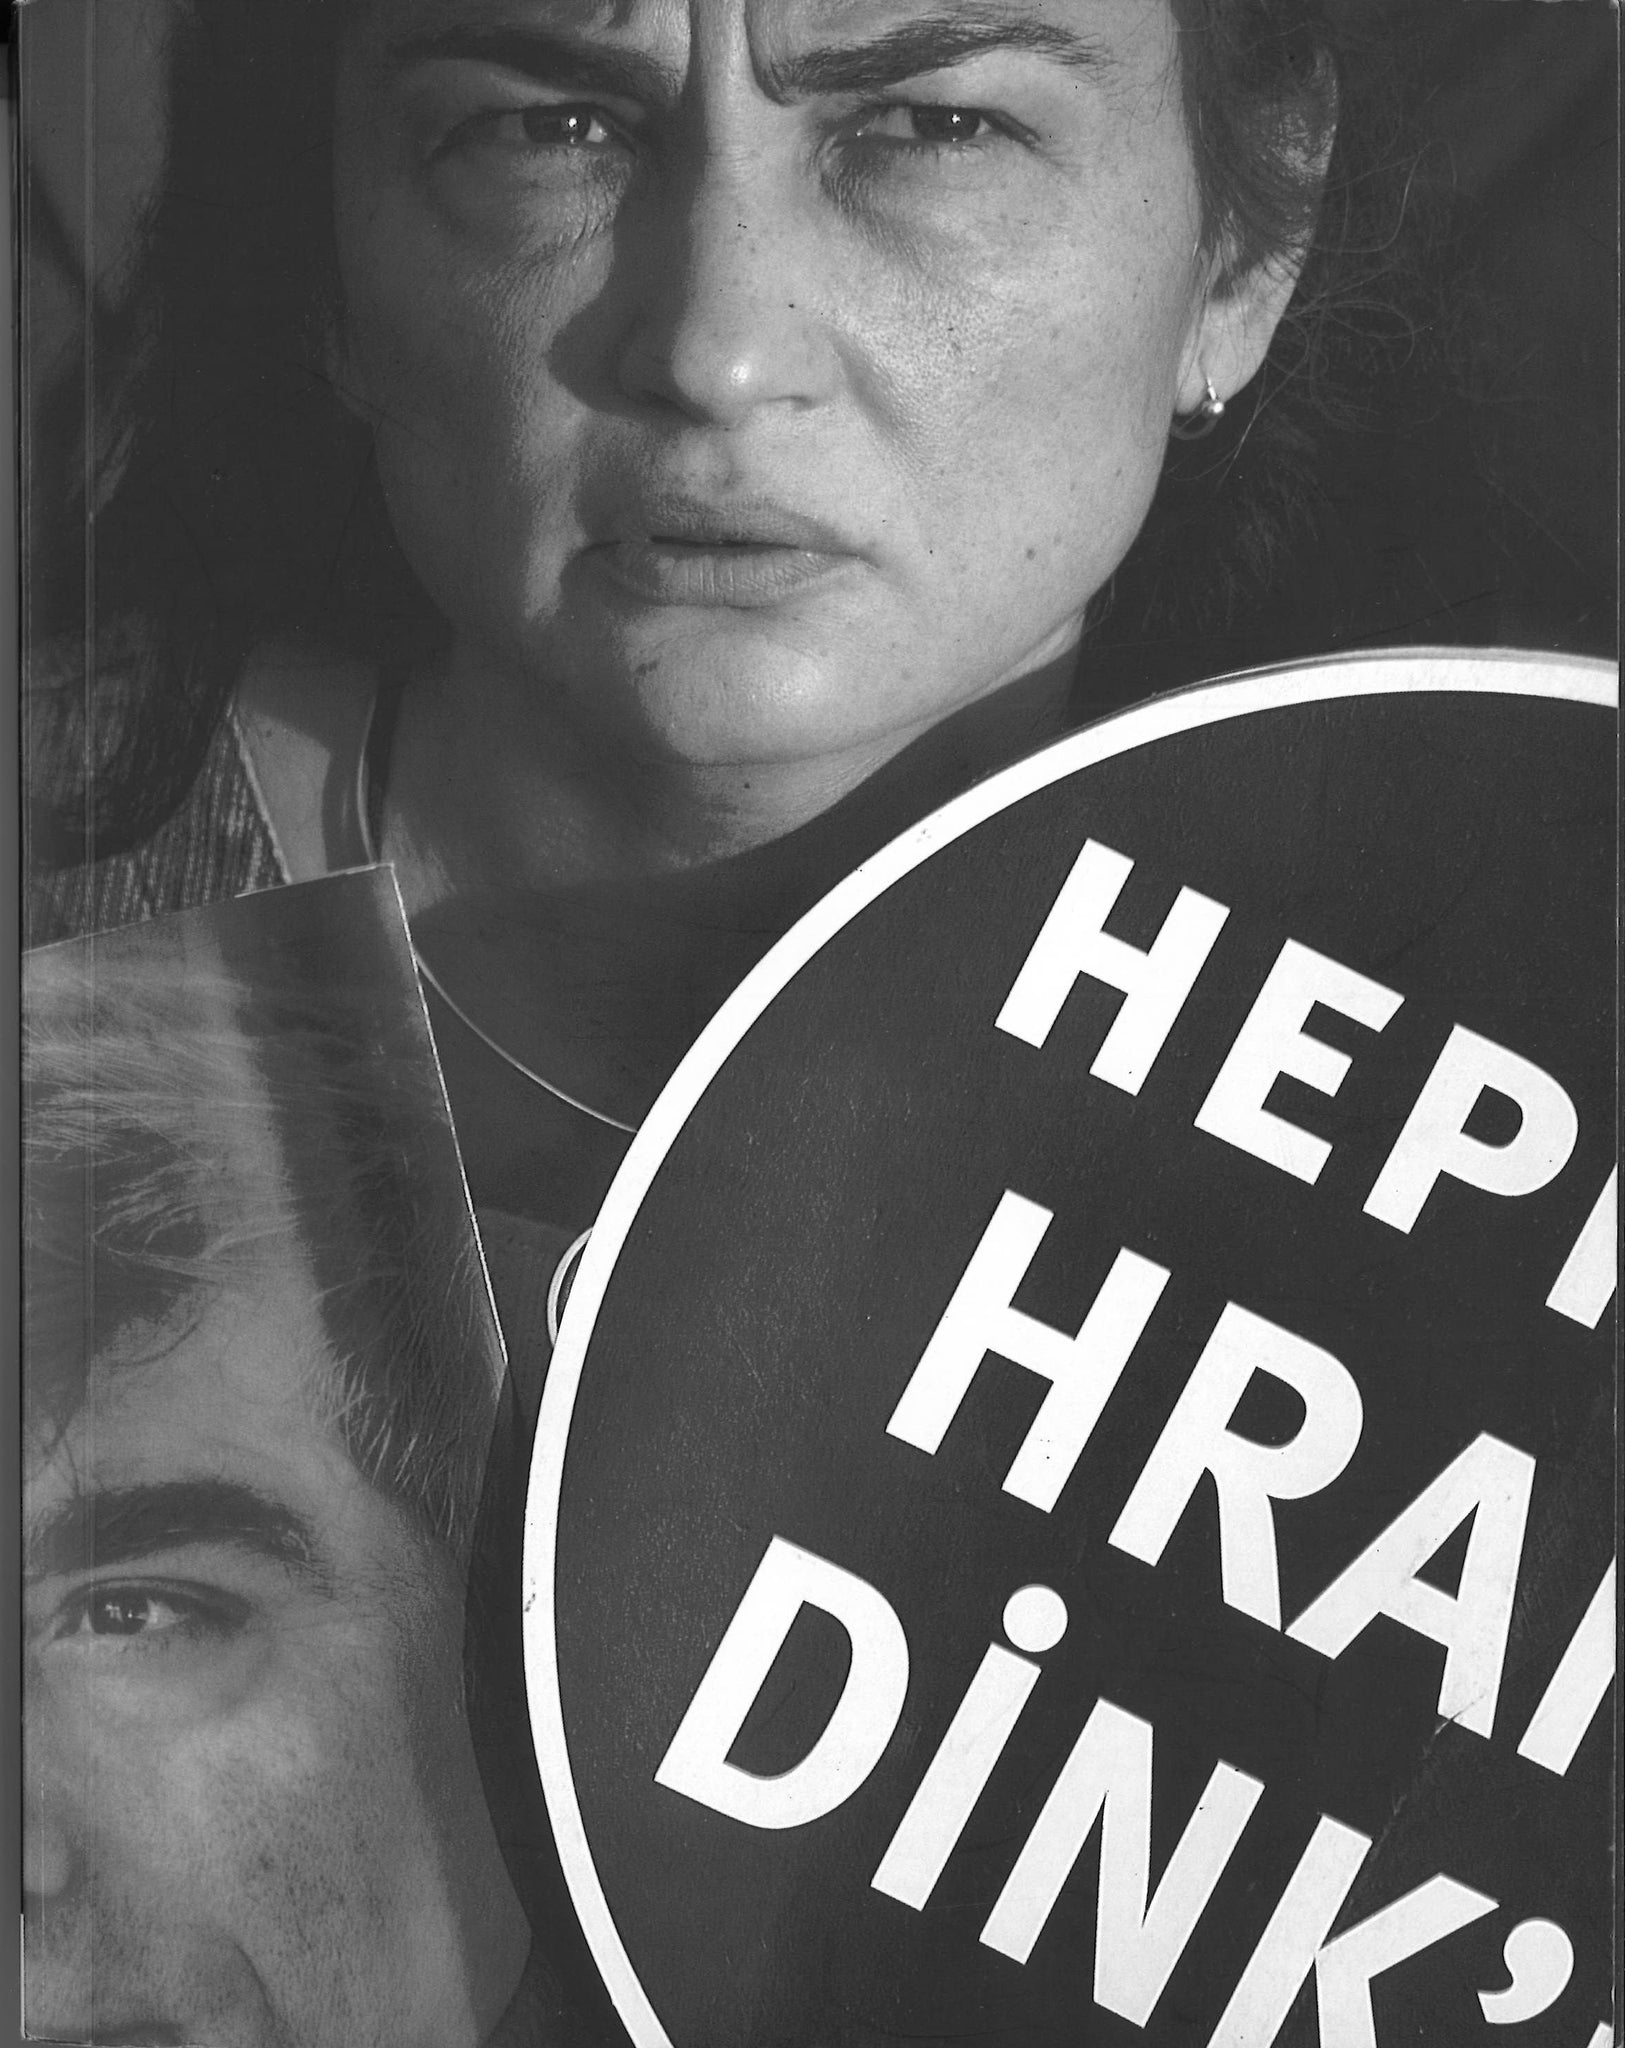 HEPIMIZ HRANT DINK'IZ ~ We Are All Hrant Dink